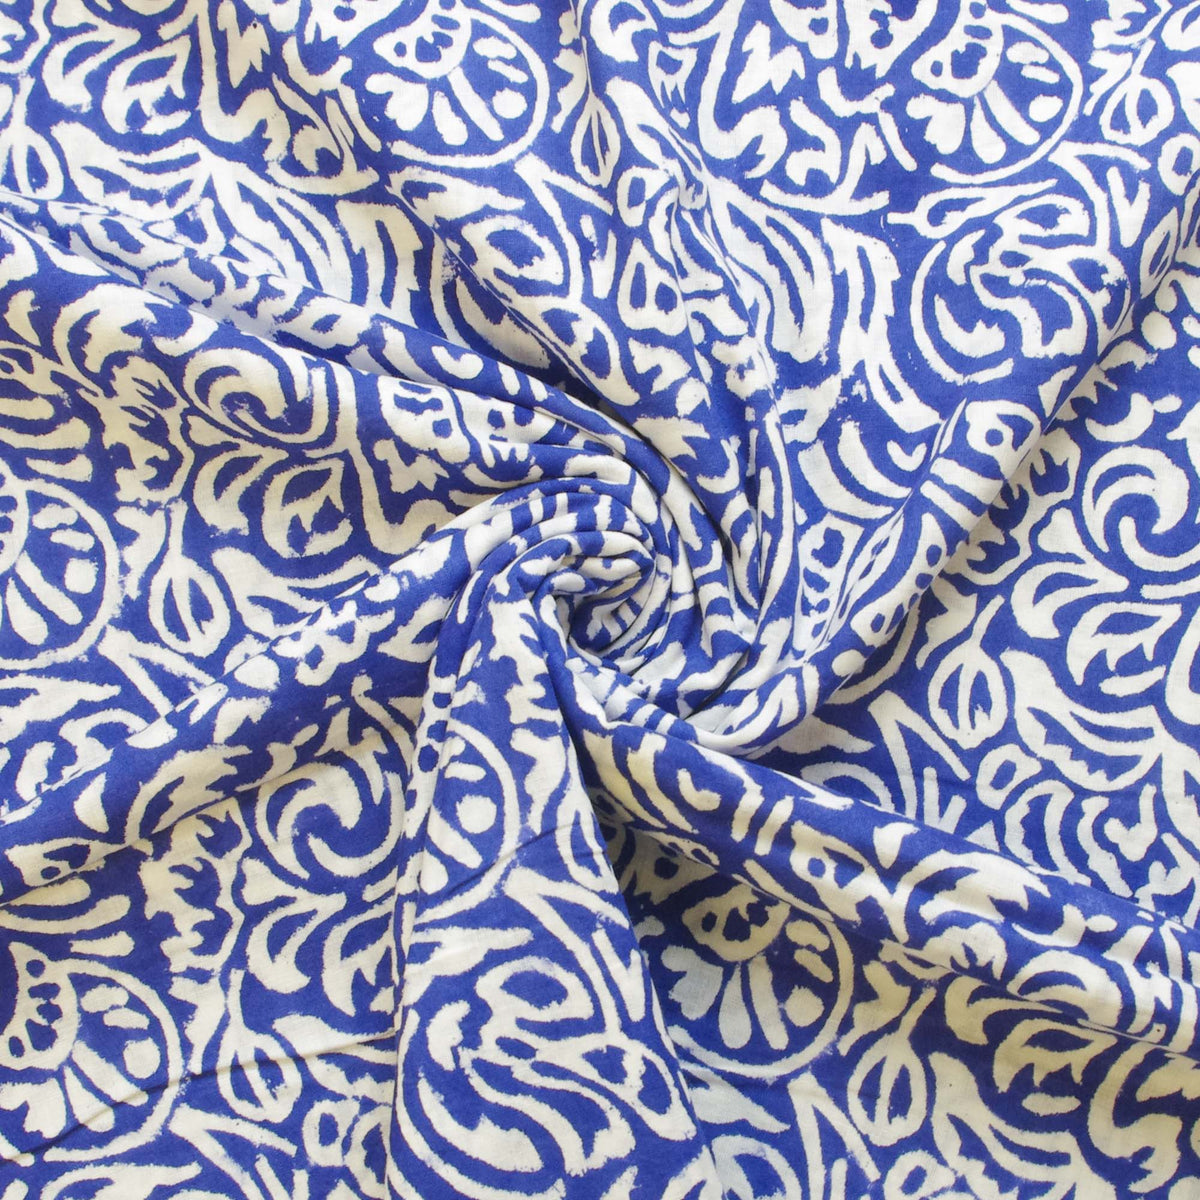 Indischer Handblock 100 % Baumwolle Königsblau Paisley Damen Kleid Stoff Design 333